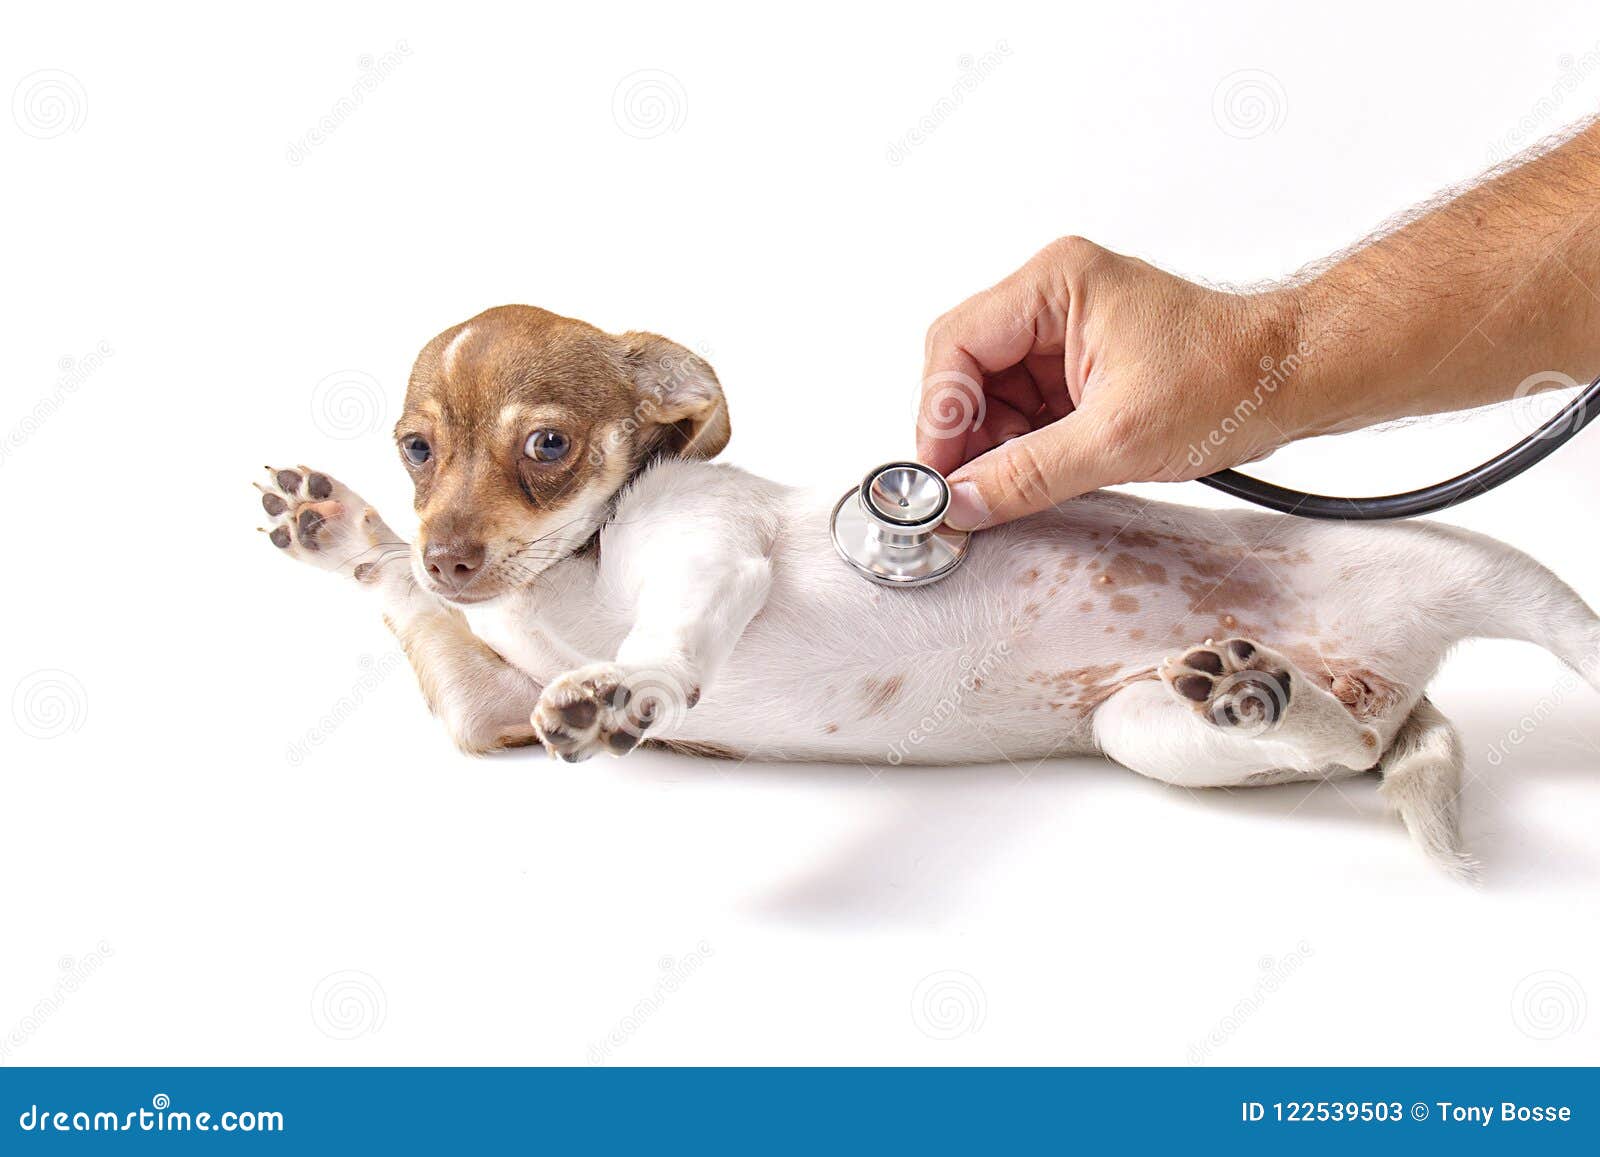 veterinarian pets checkup